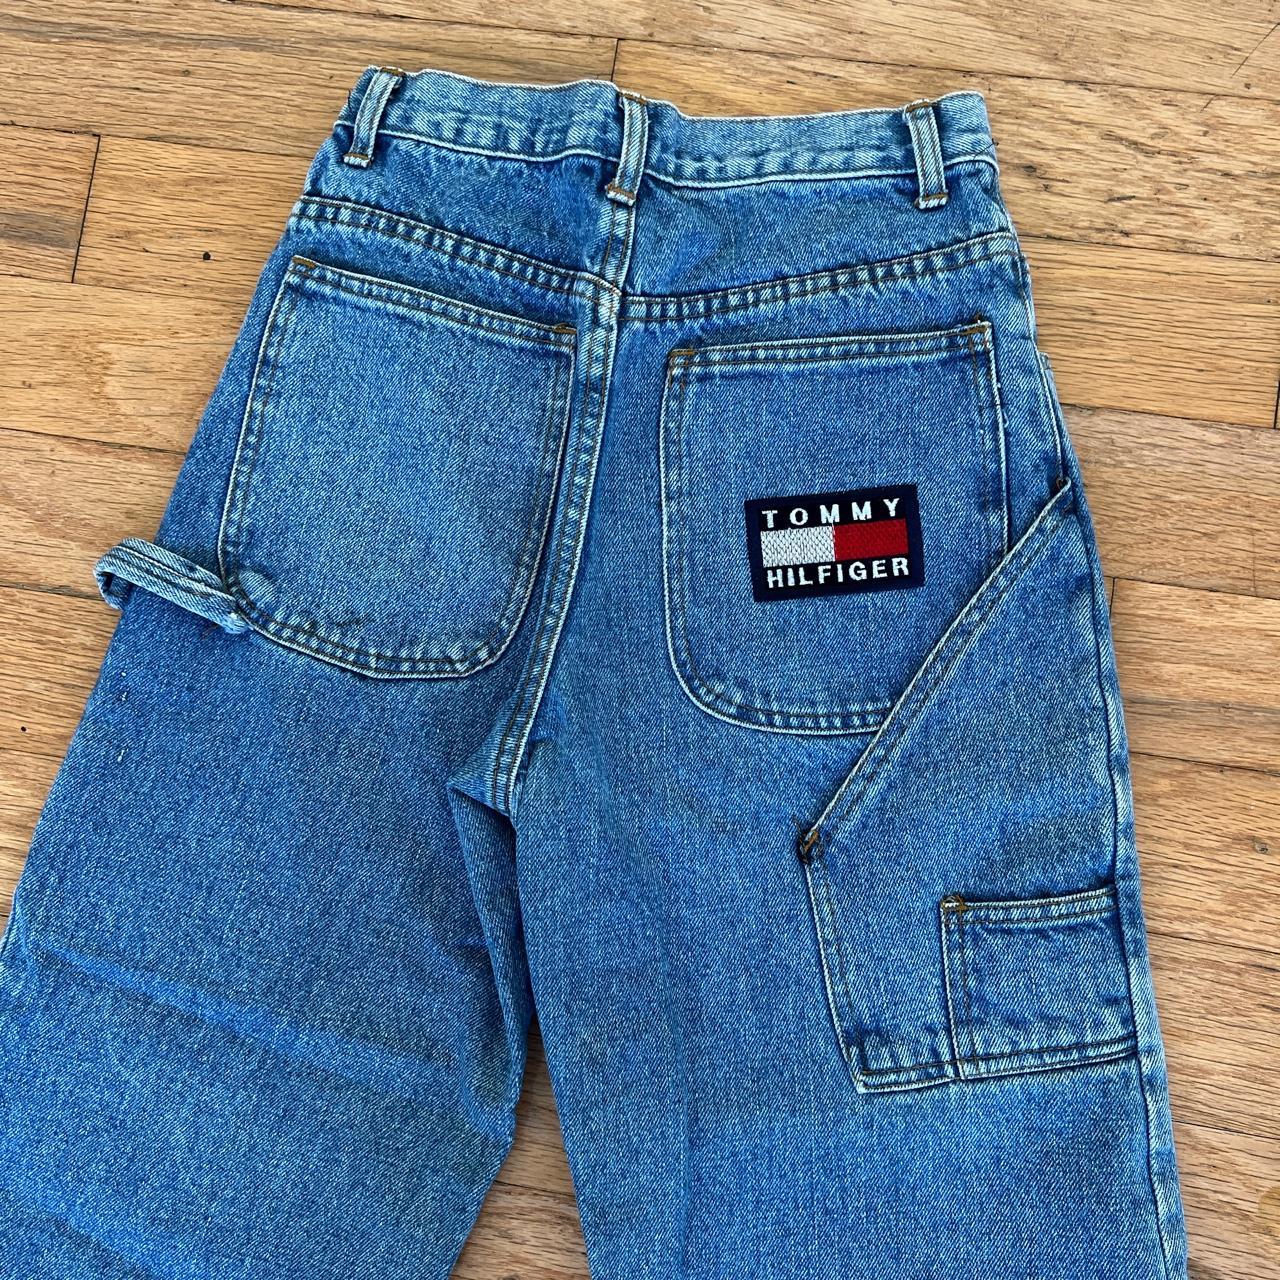 Vintage Tommy Hilfiger Cargo Jeans Size 24 - Depop